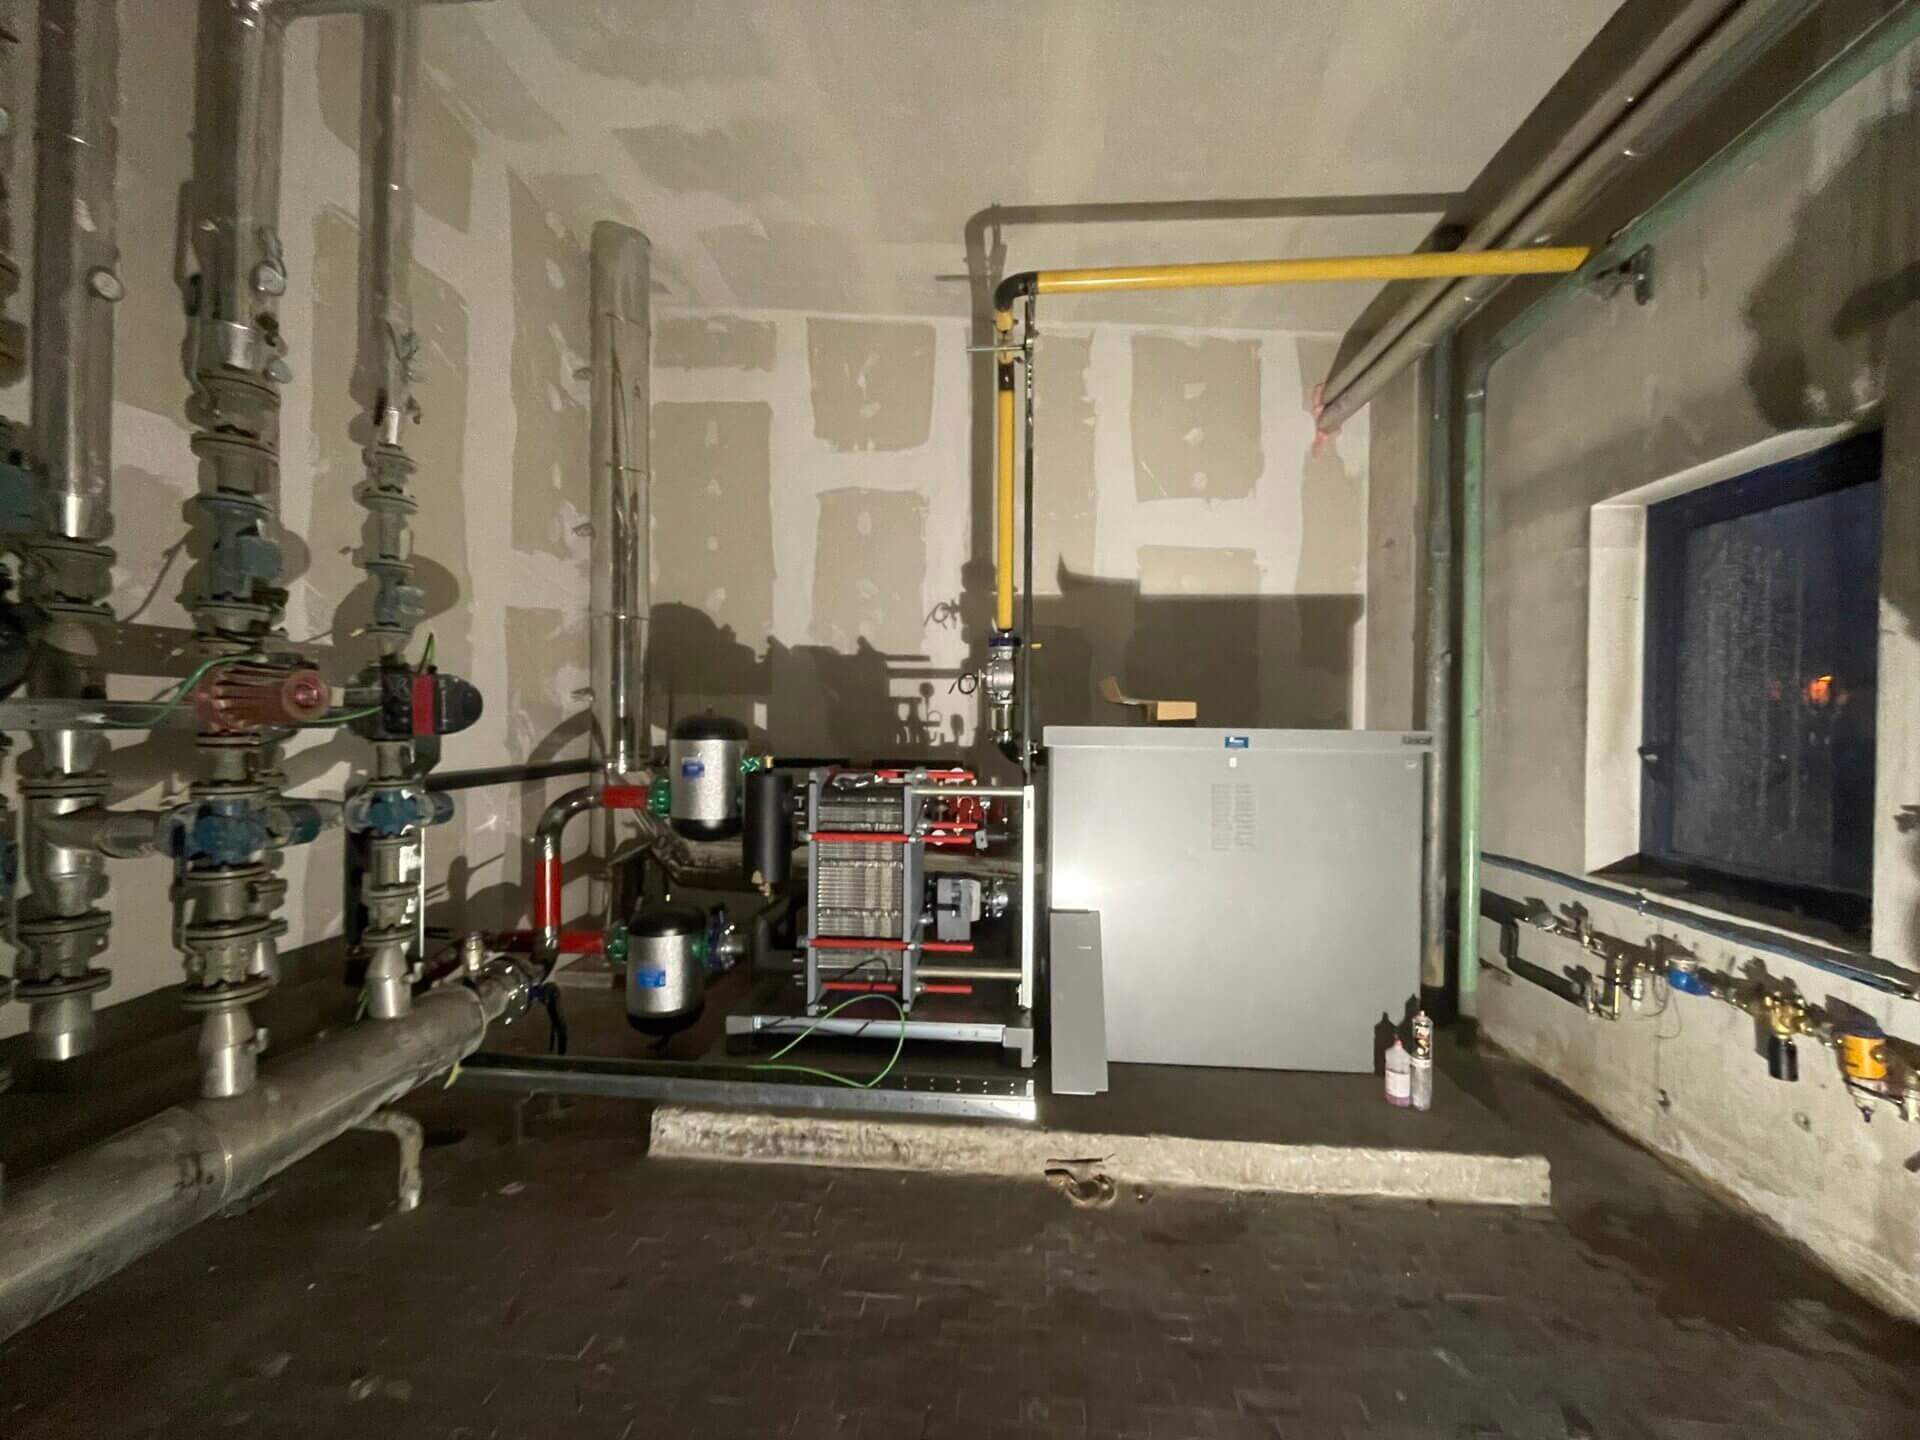 intervento di efficientamento energetico di impianto termoidraulico industriale - Pedroncelli Idraulica